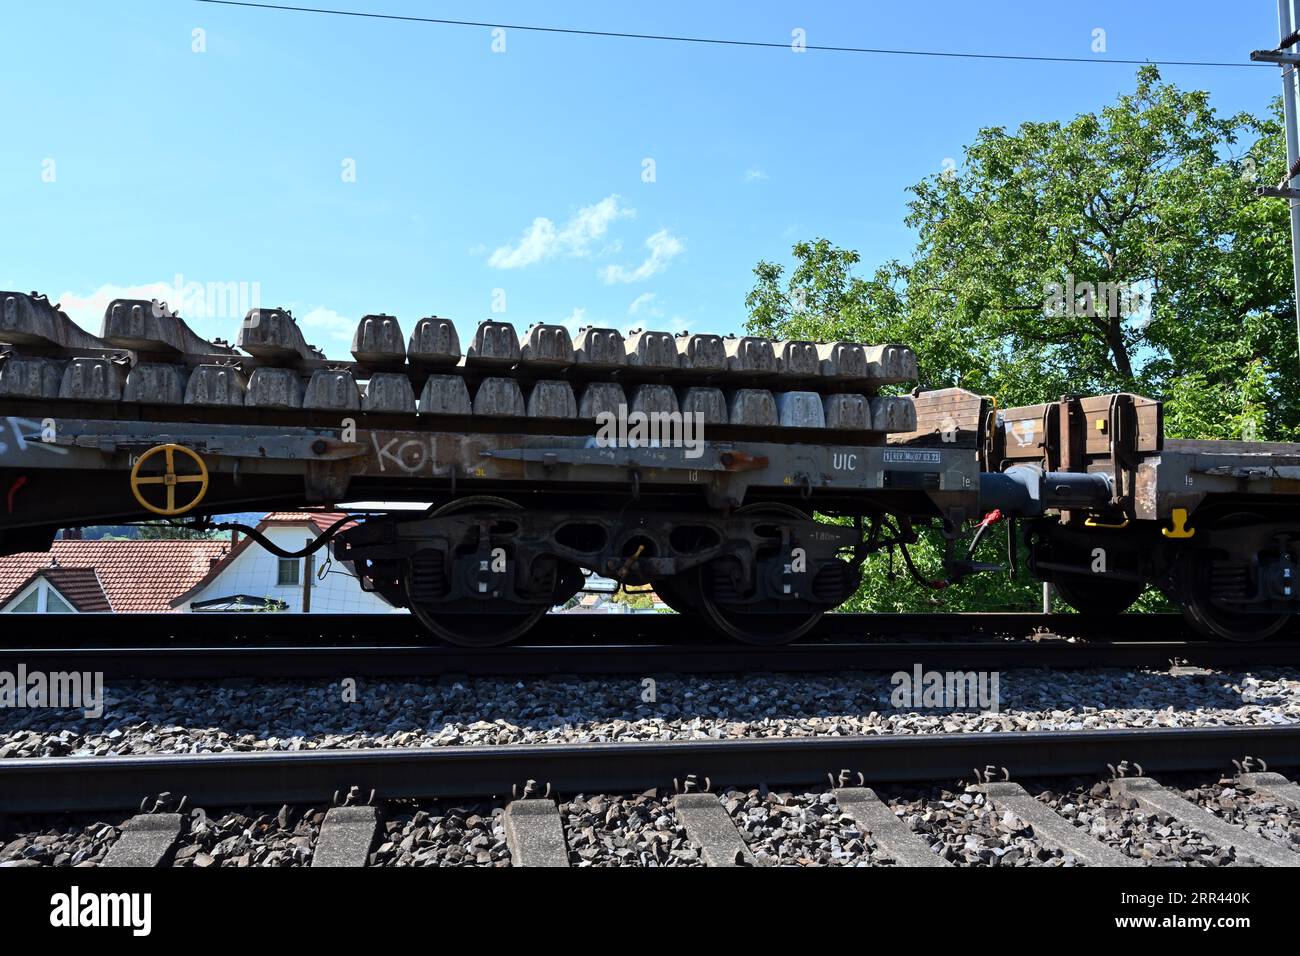 Un wagon de chemin de fer chargé de traverses en béton se dresse sur les rails menant à la gare d’Urdorf en Suisse. Banque D'Images